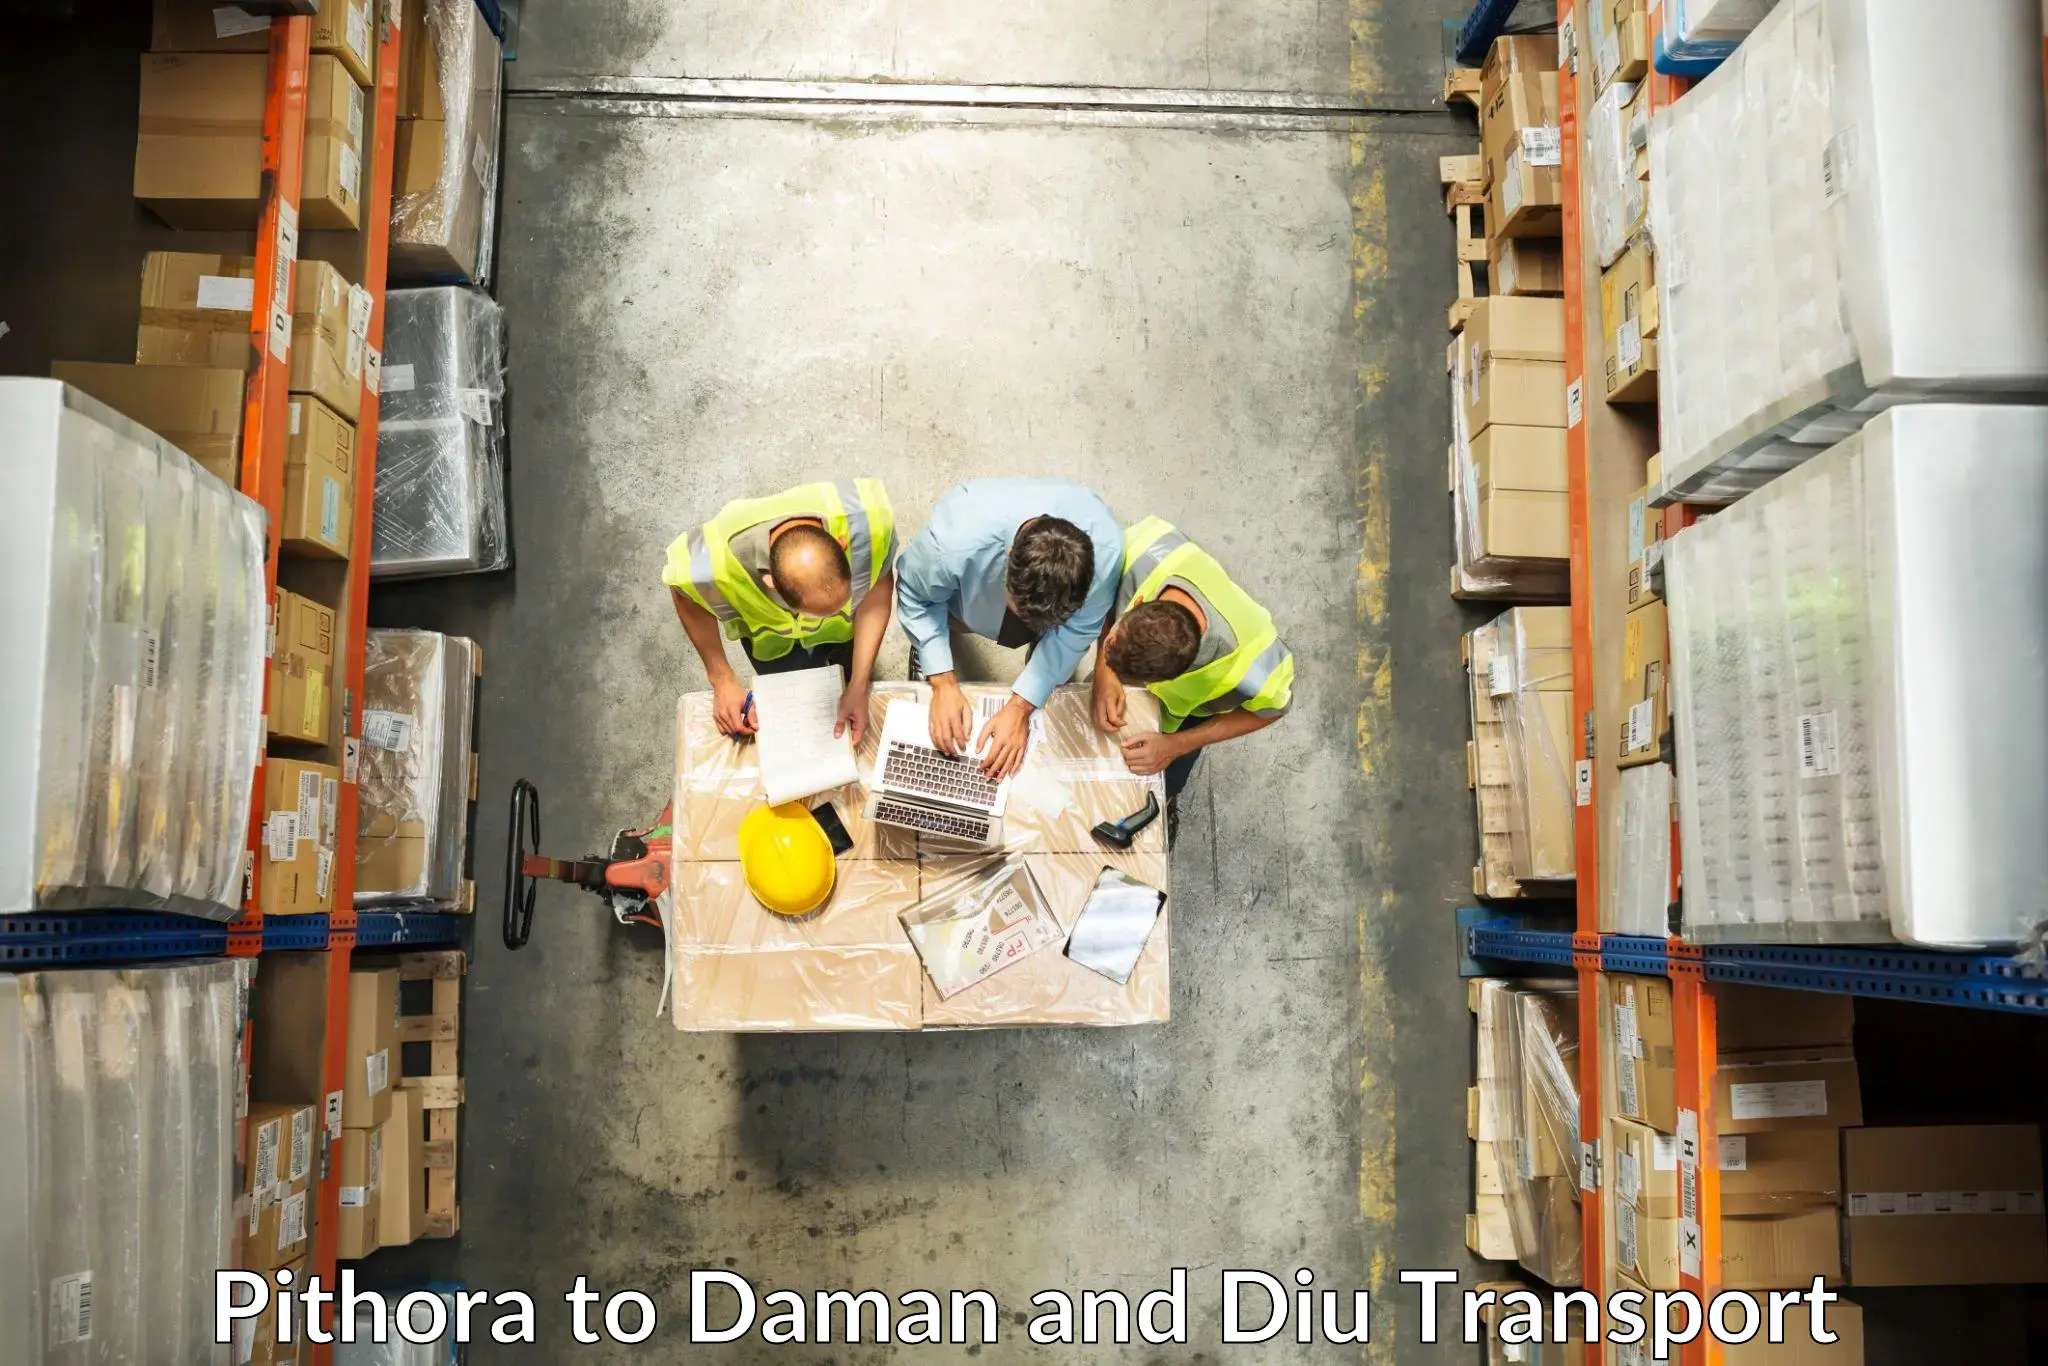 Transportation services Pithora to Daman